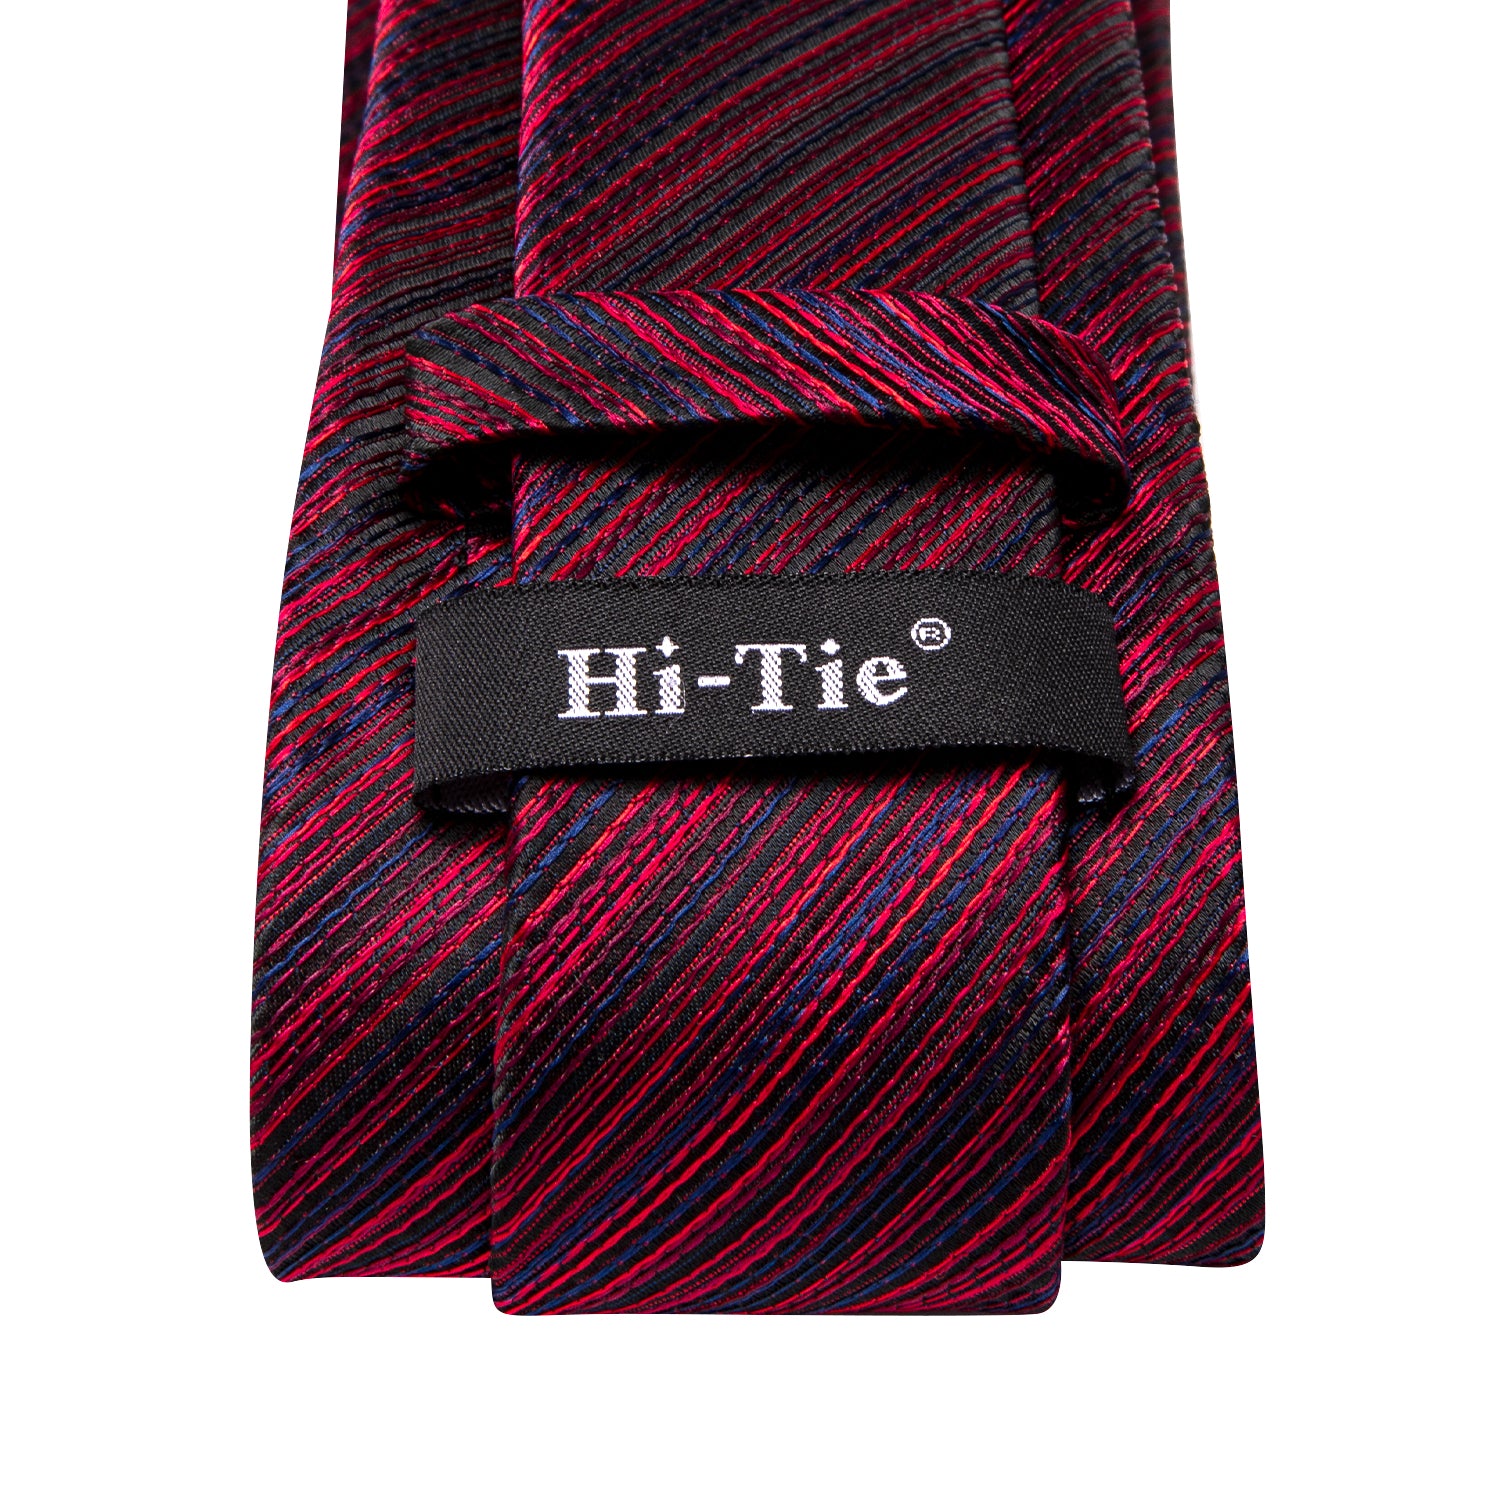 Hi-Tie Red Blue Slanting Line Men's Tie Pocket Square Cufflinks Set